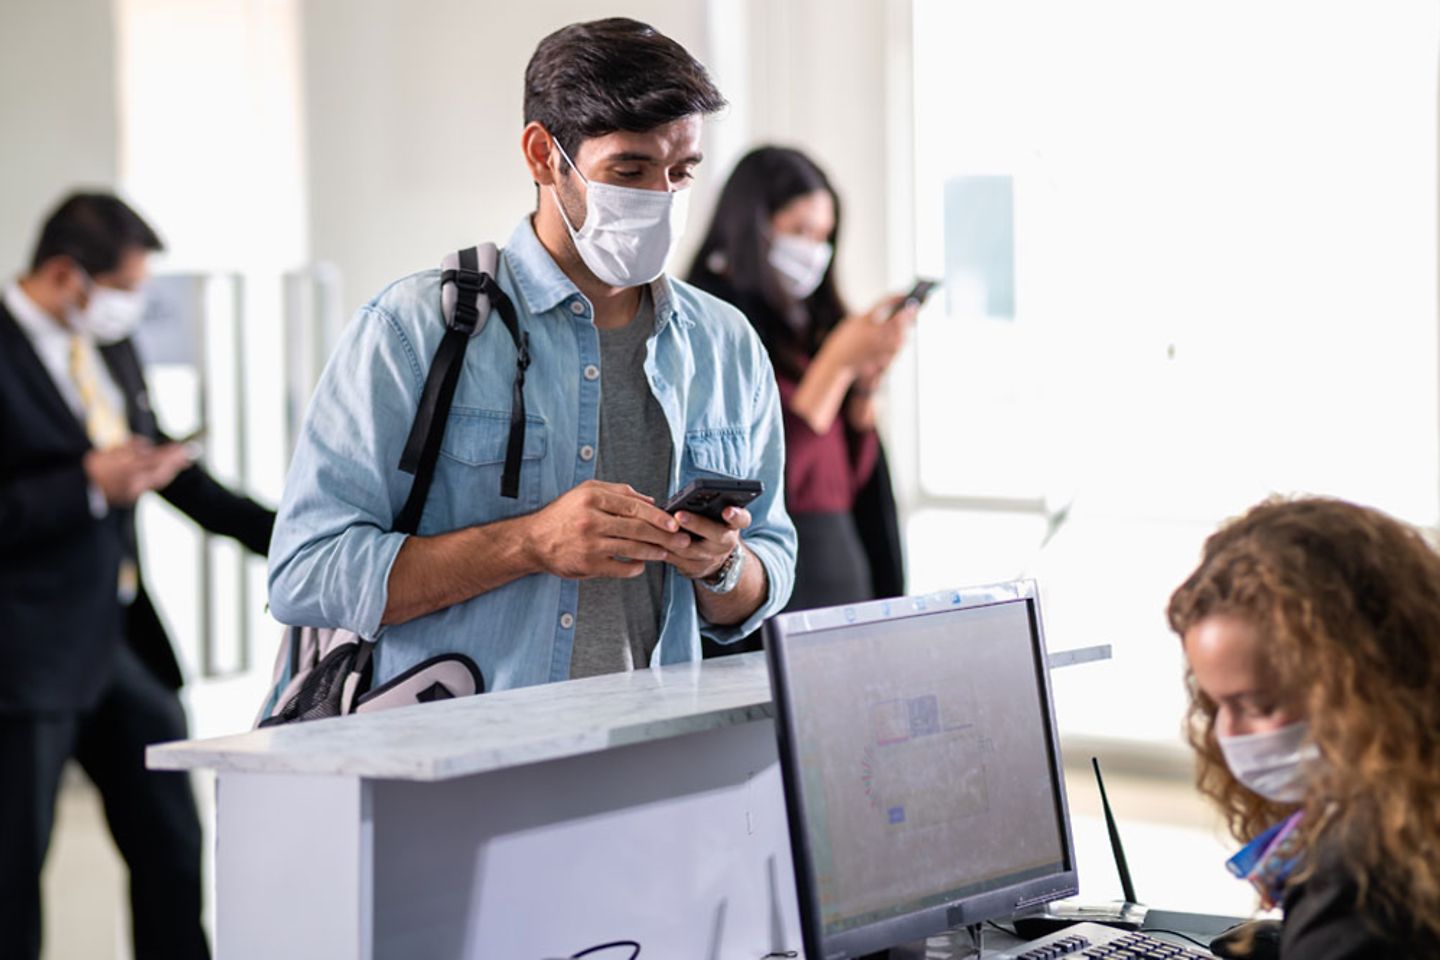  Groep vliegtuigtoeristen dragen een mondmasker en wachten op de bagage en boarding pass op vliegveld toegangsbalie / check in.